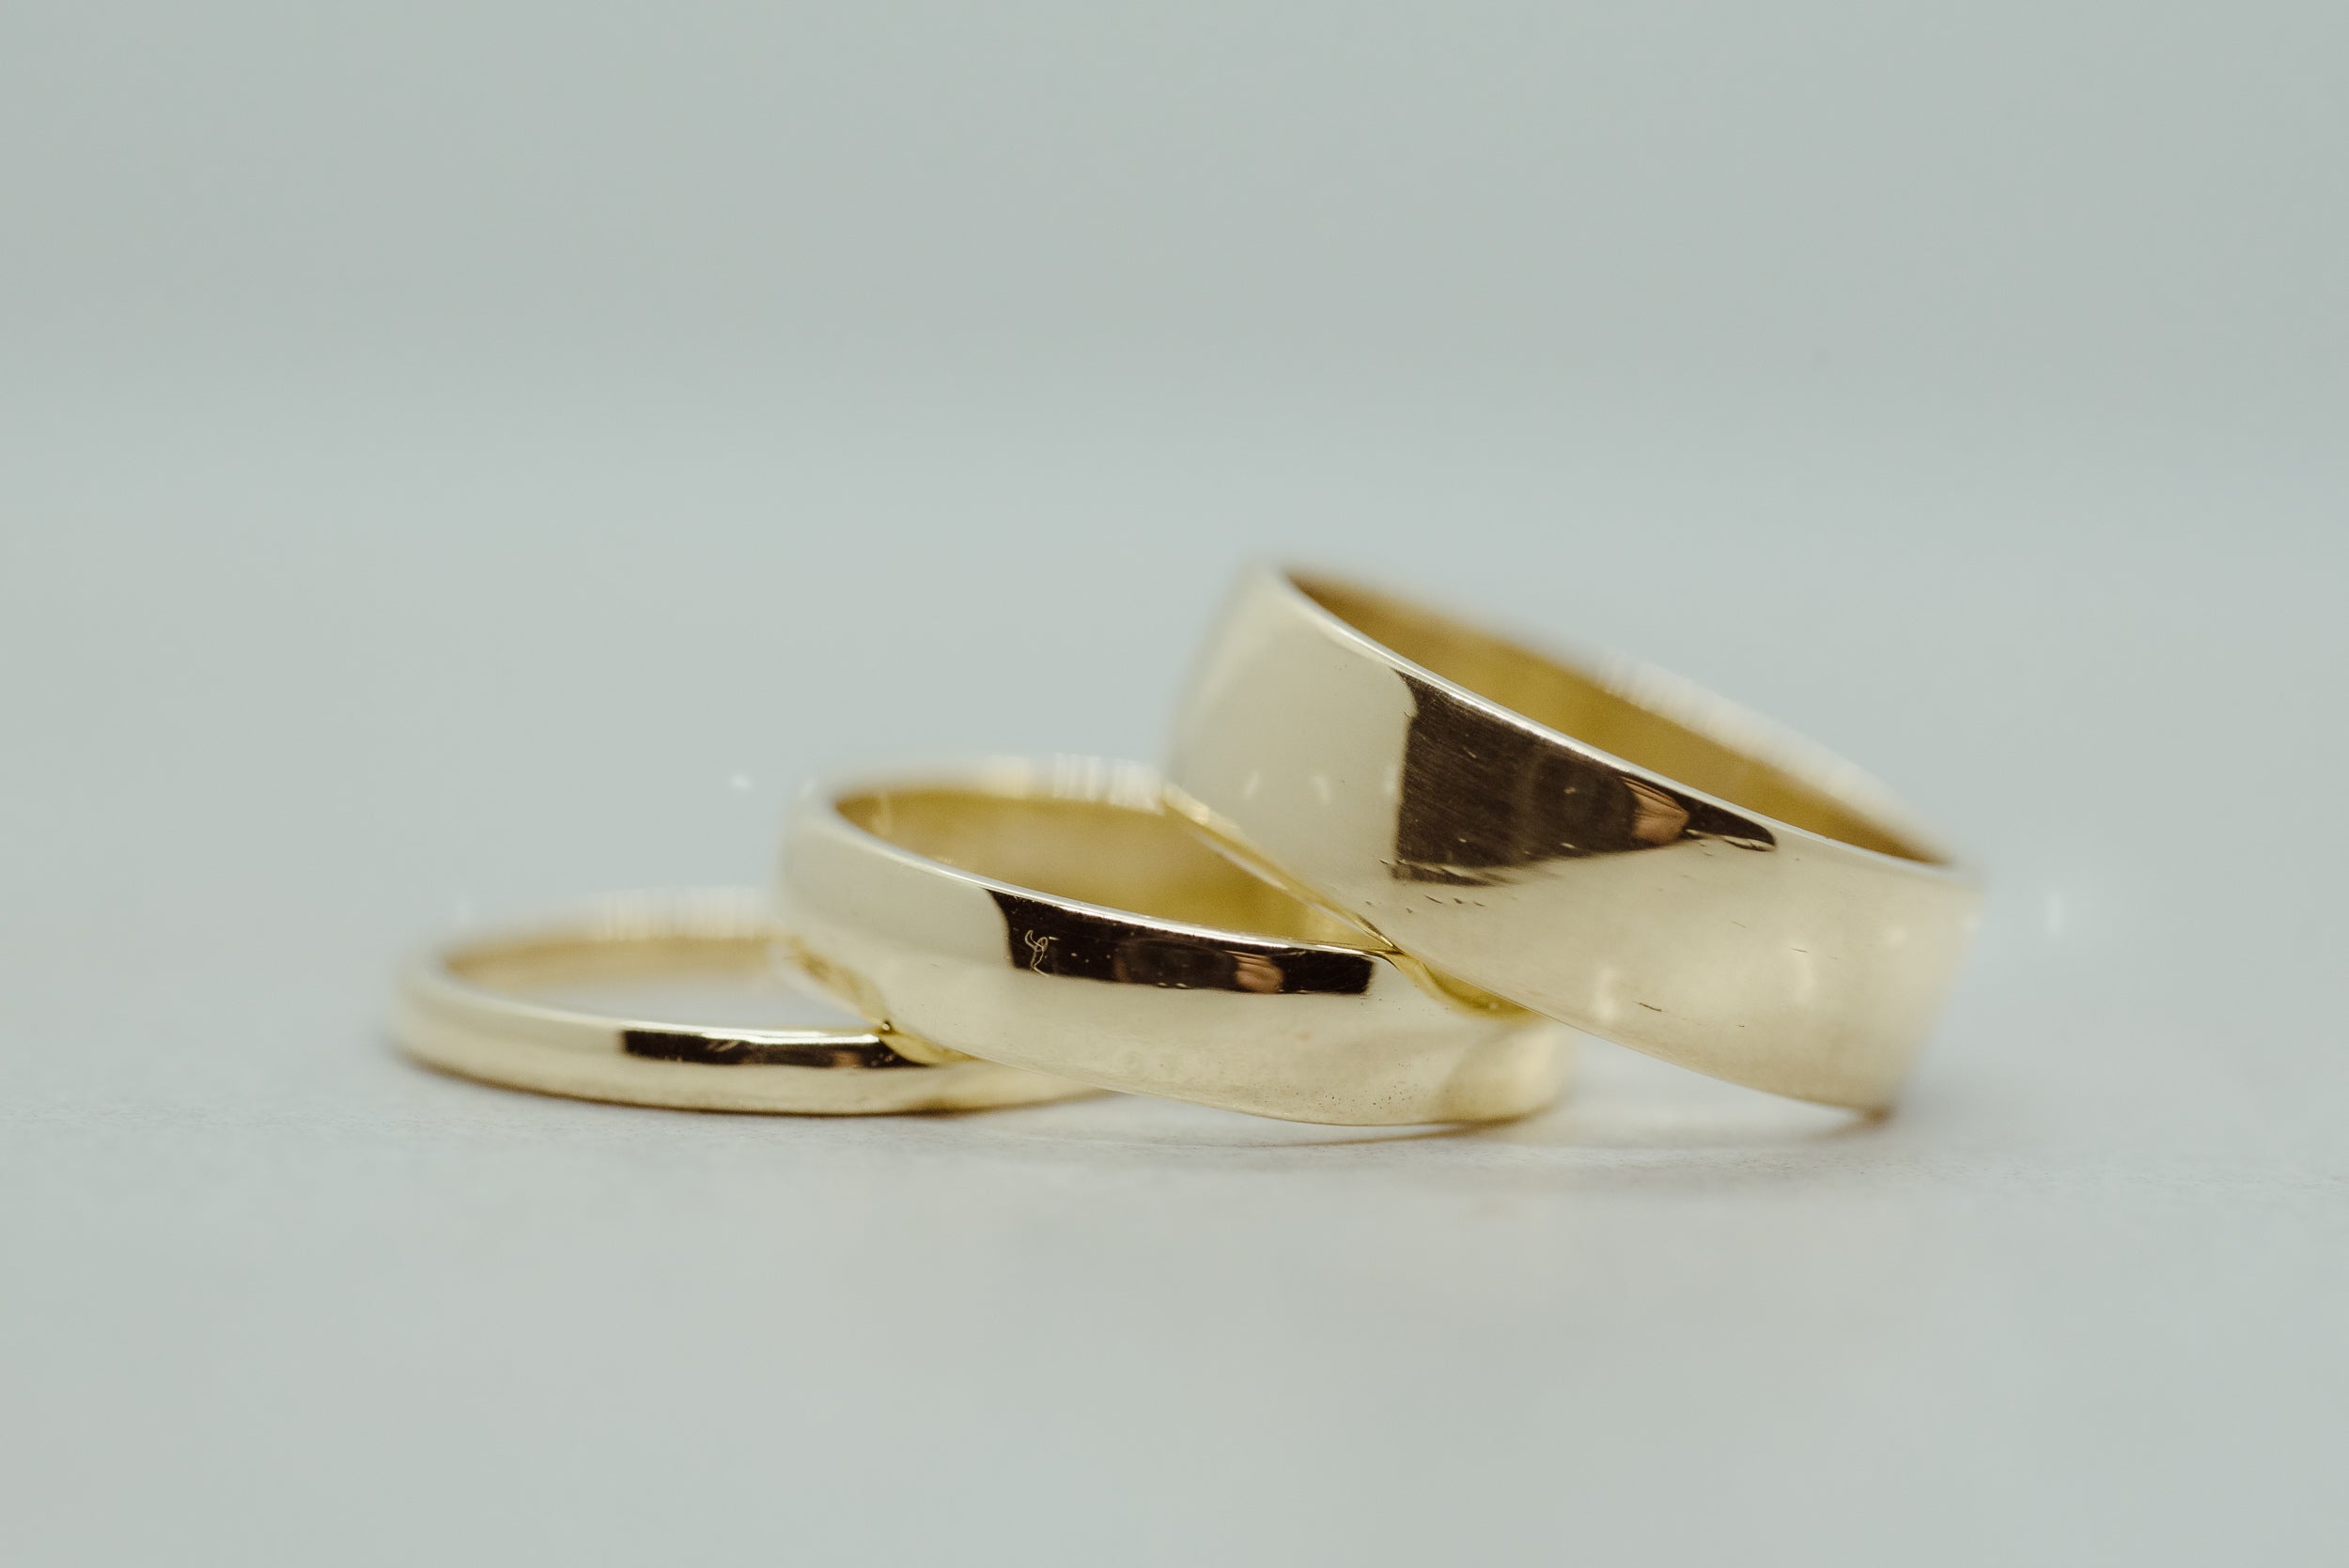 Classic Wedding Band 6mm - Lelya - bespoke engagement and wedding rings made in Scotland, UK